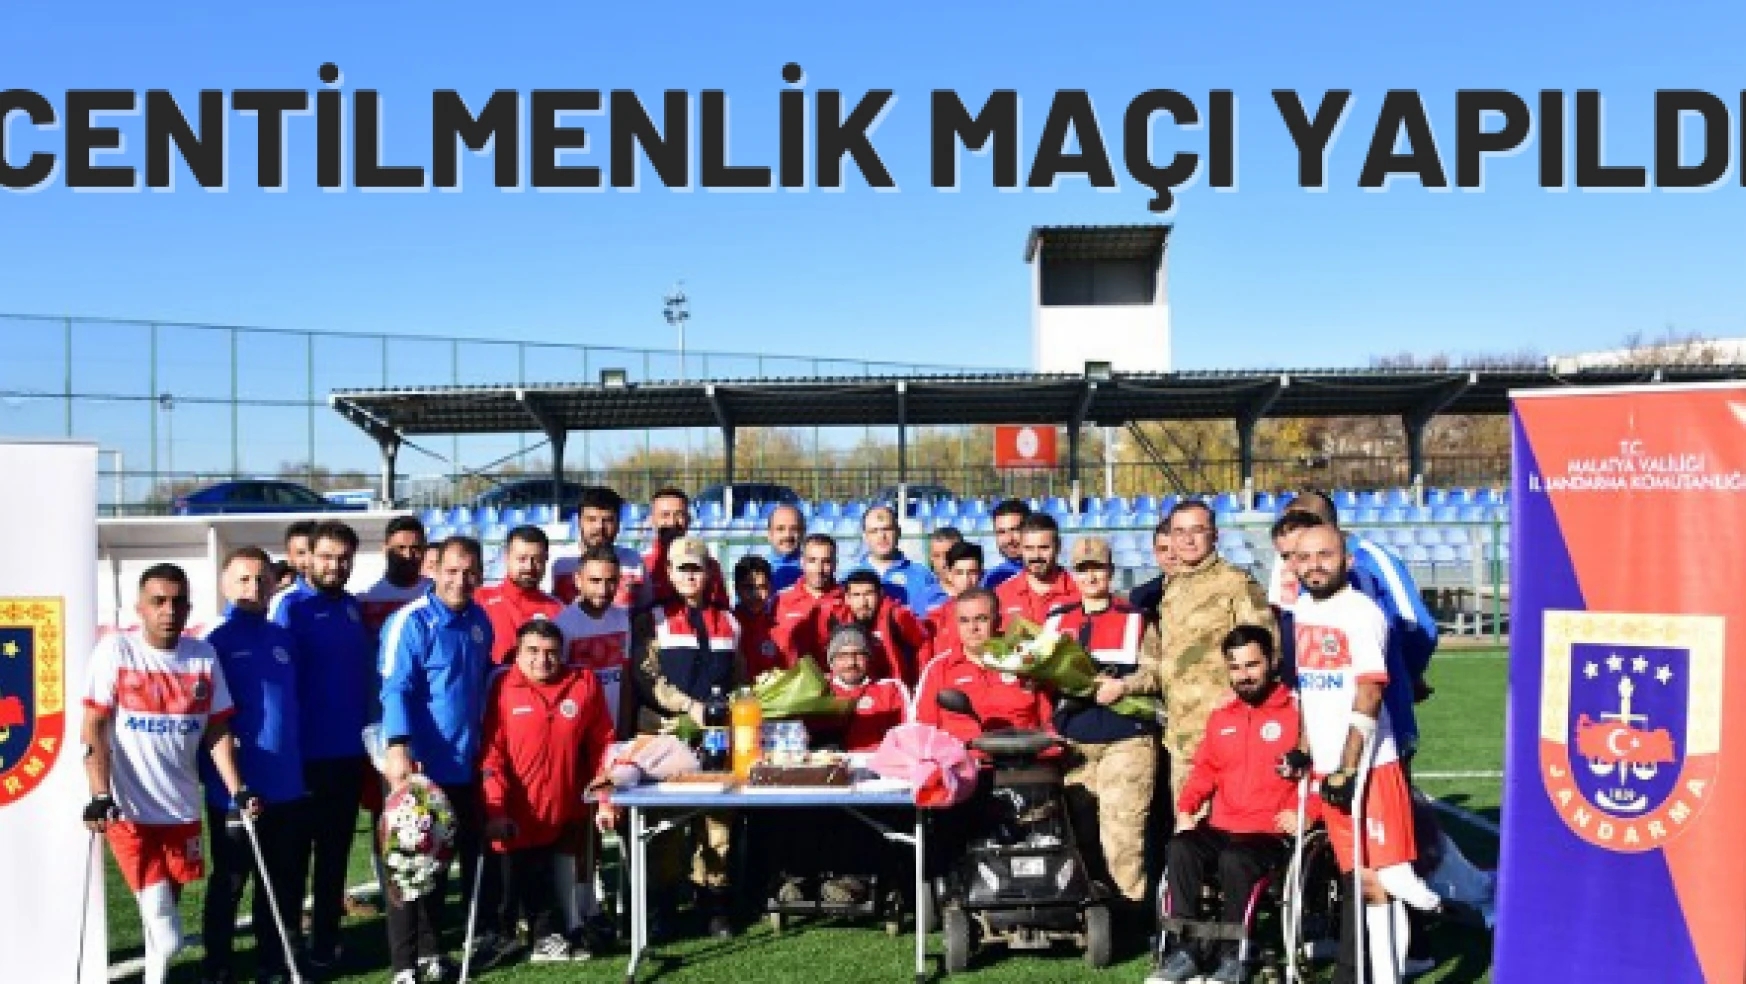 Malatya'da engelliler gününe özel maç yapıldı